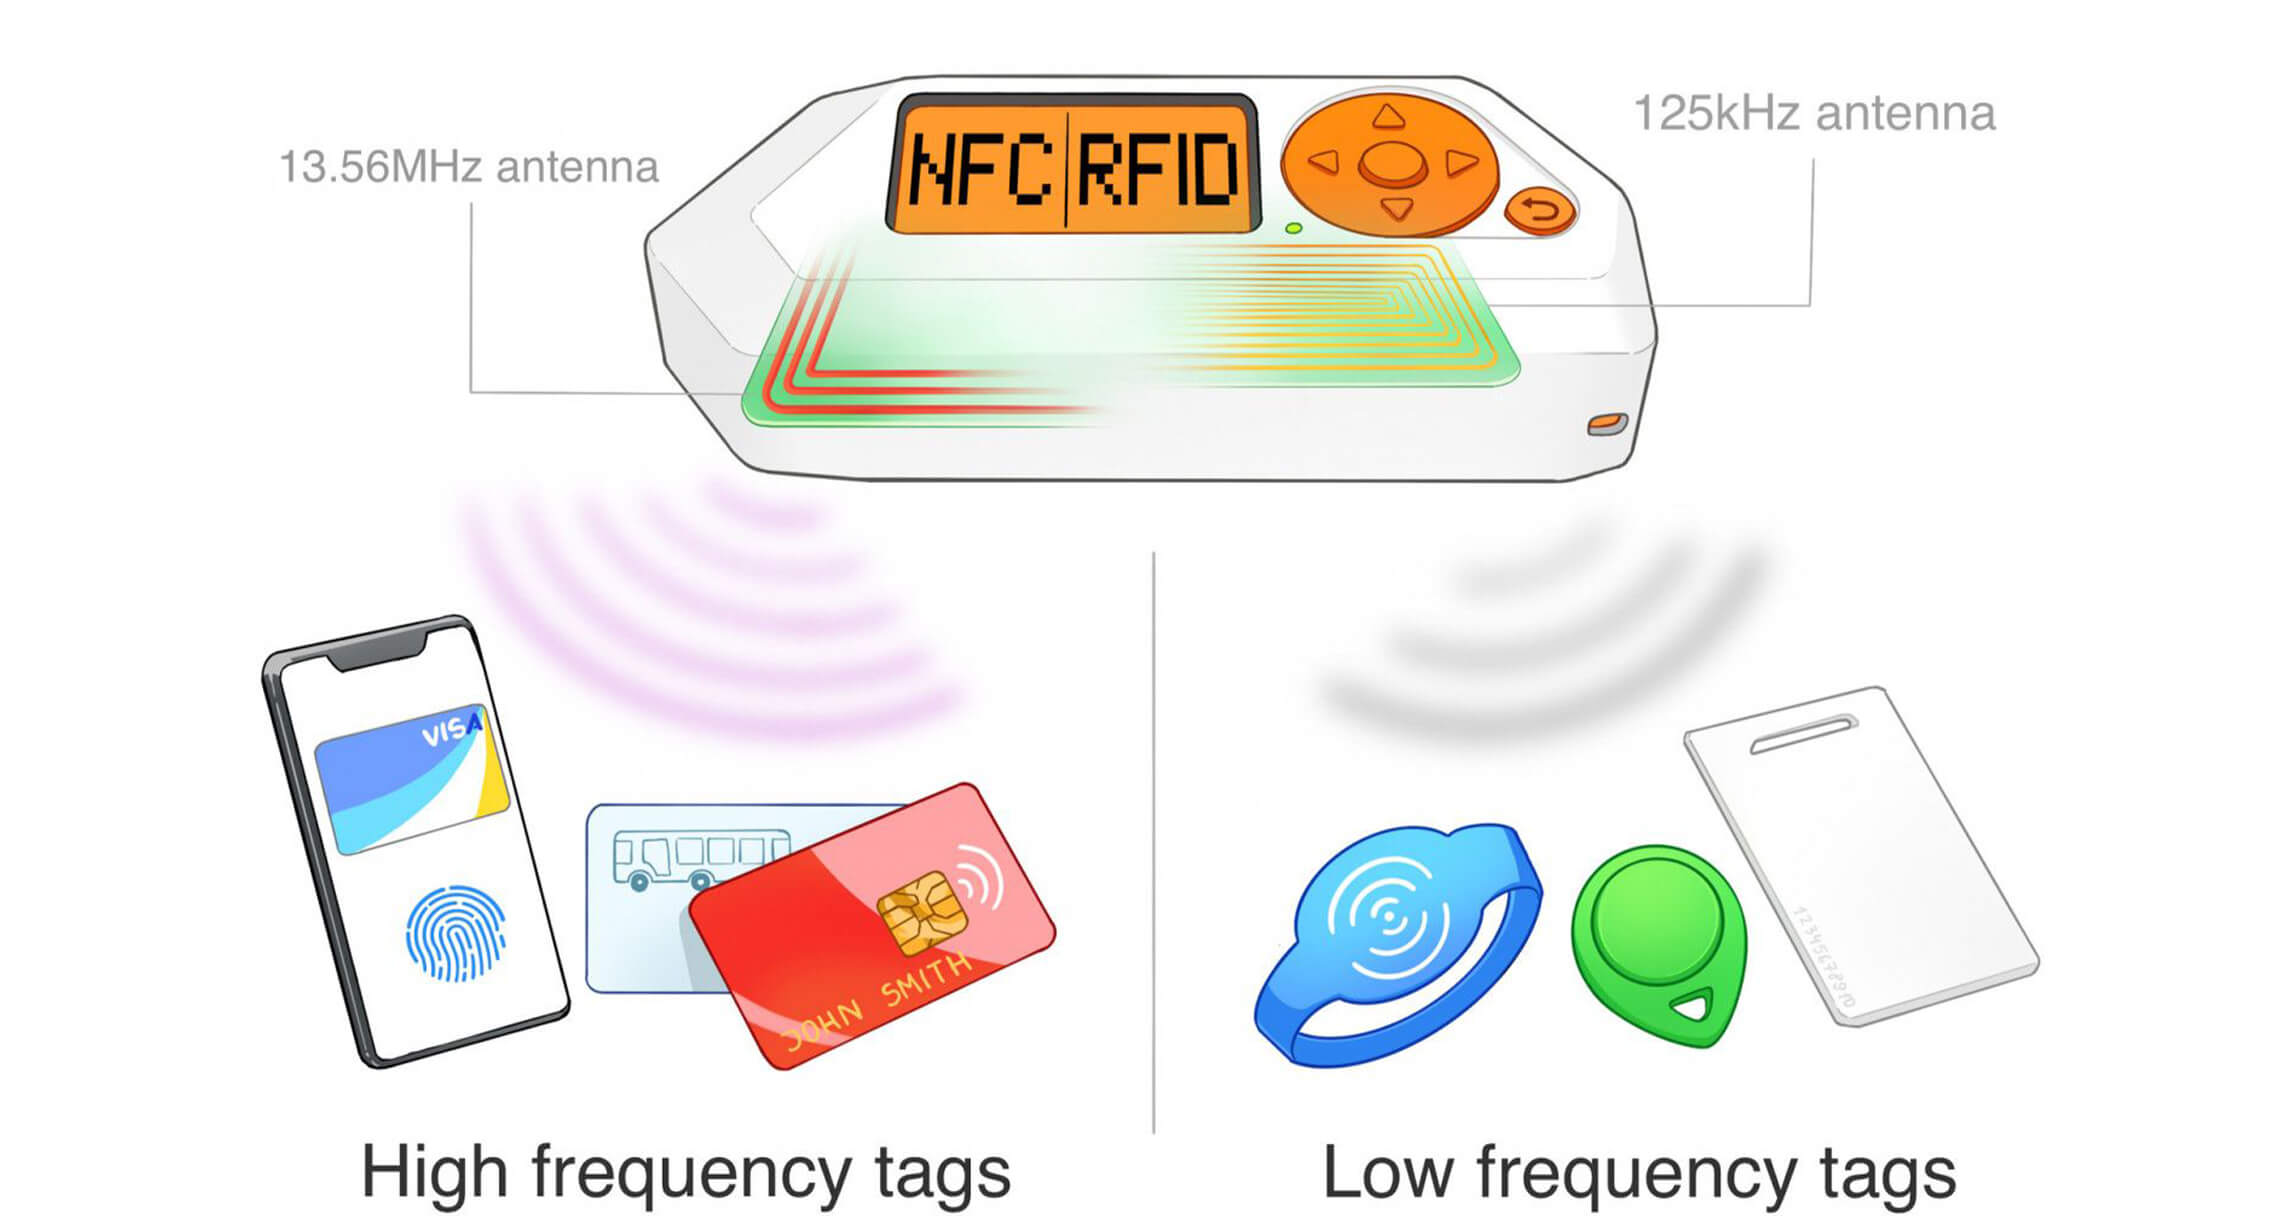 Flipper Zero RFID protocols 13.56 MHz and 125 kHz